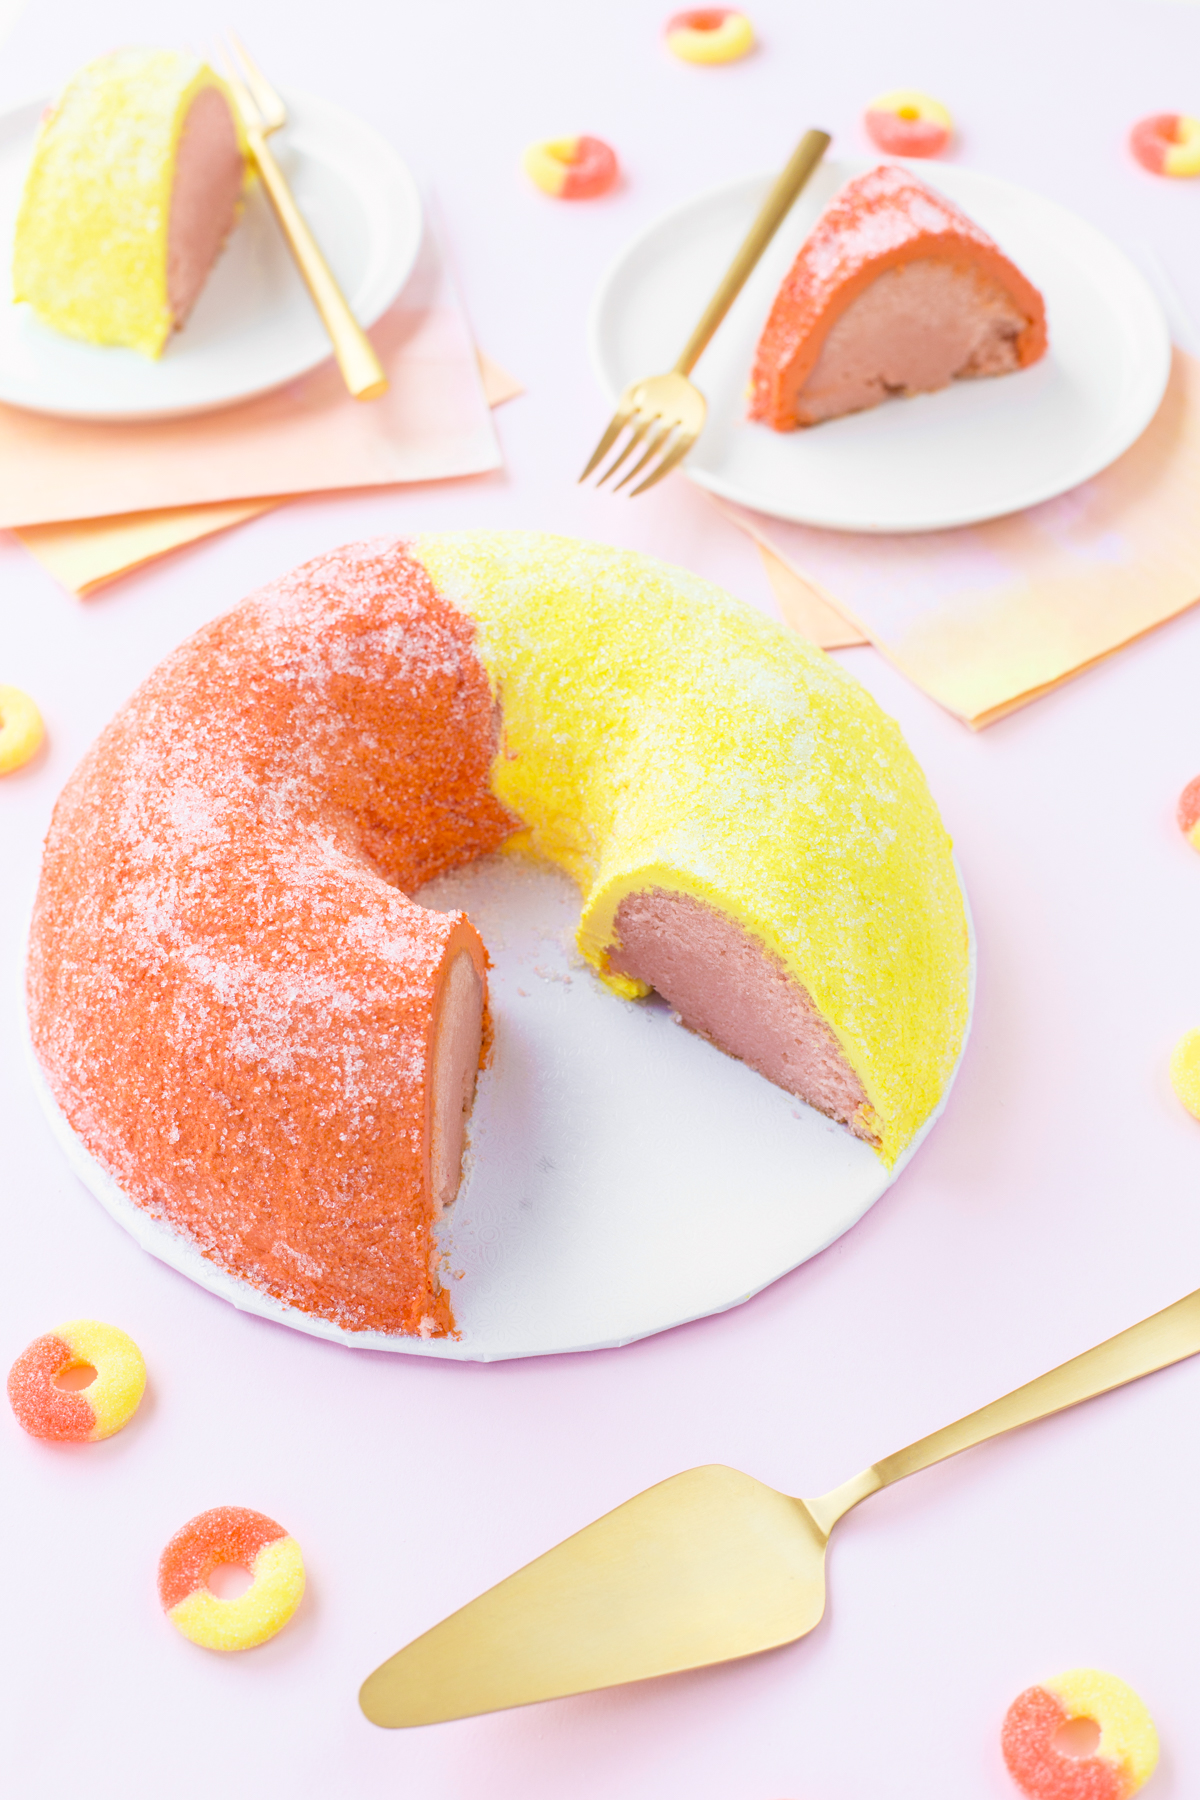 Acrylic Cake Shape Ring | Cake shapes, Ring cake, Summer cake recipes